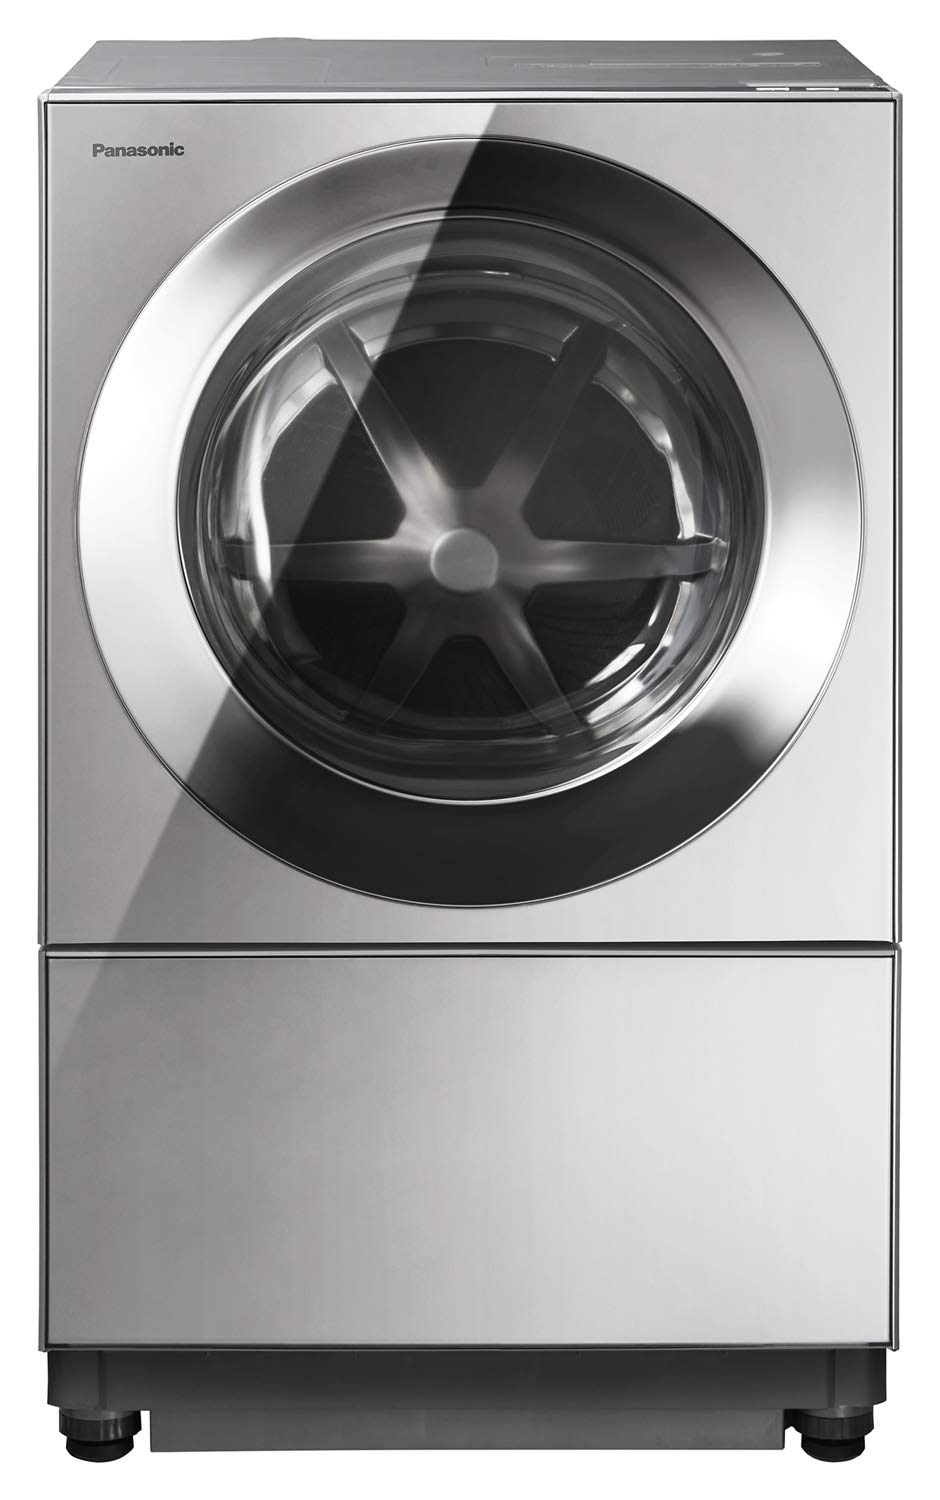 10位：パナソニック ななめドラム洗濯乾燥機 Cuble(キューブル) 10kg 左開き プレミアムステンレス NA-VG2300L-X